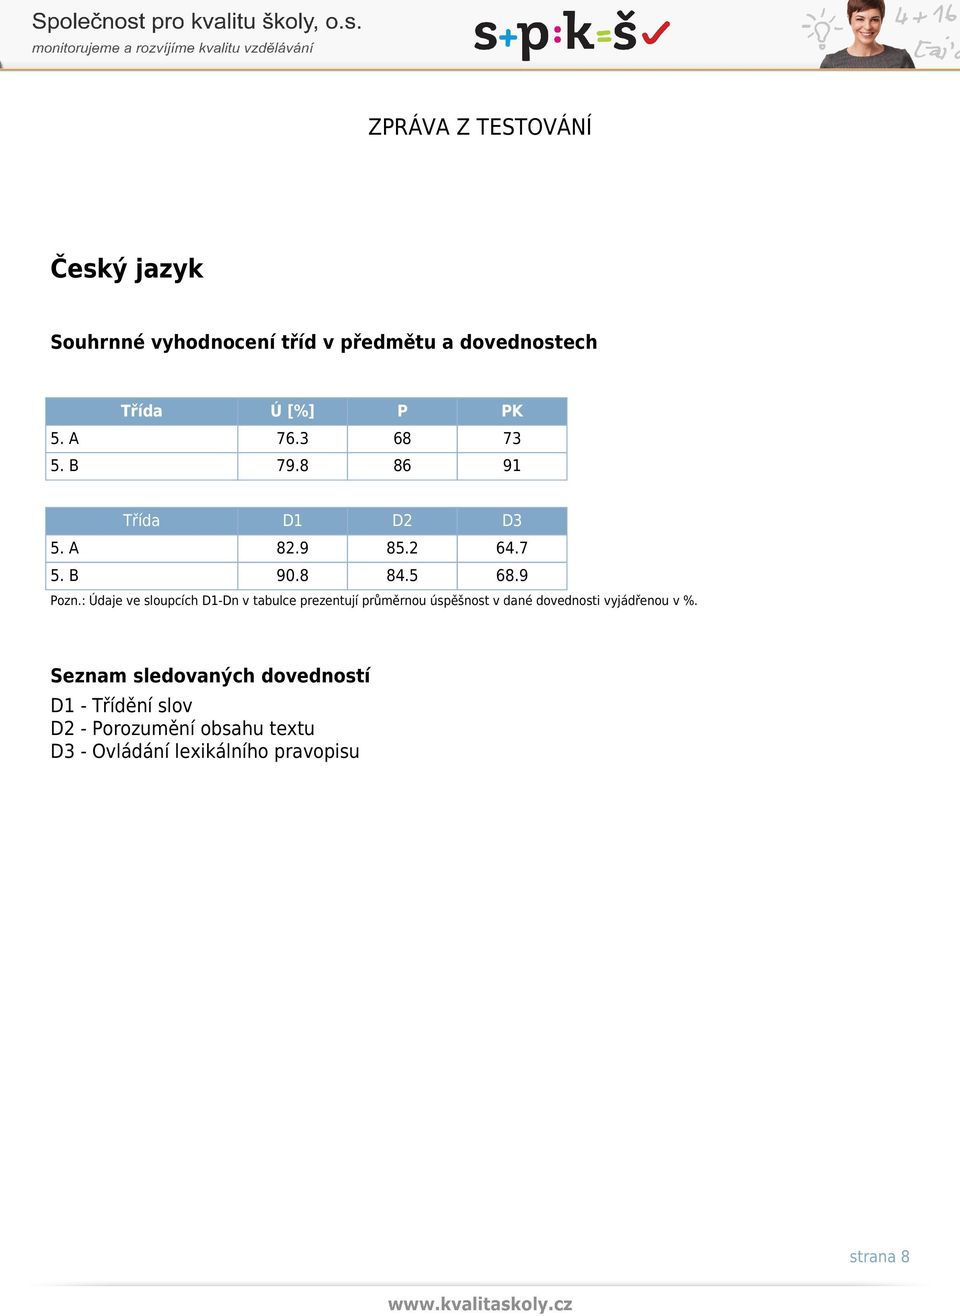 : Údaje ve sloupcích D1-Dn v tabulce prezentují průměrnou úspěšnost v dané dovednosti vyjádřenou v